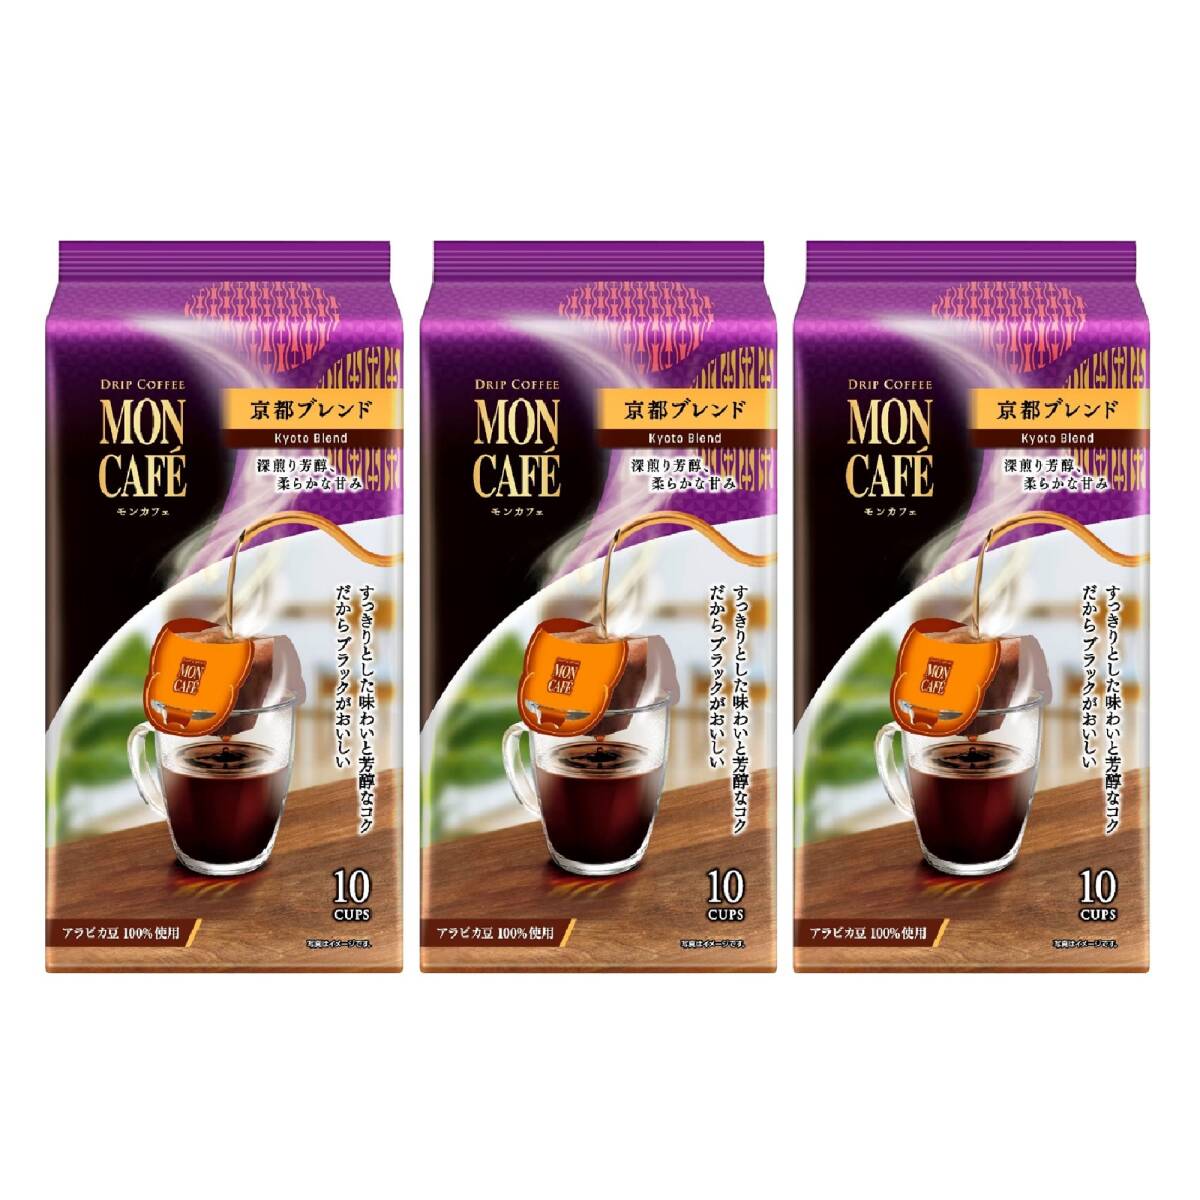 Moncafe Kyoto Blend 10P ×3 пакетика Обычный (капельный)